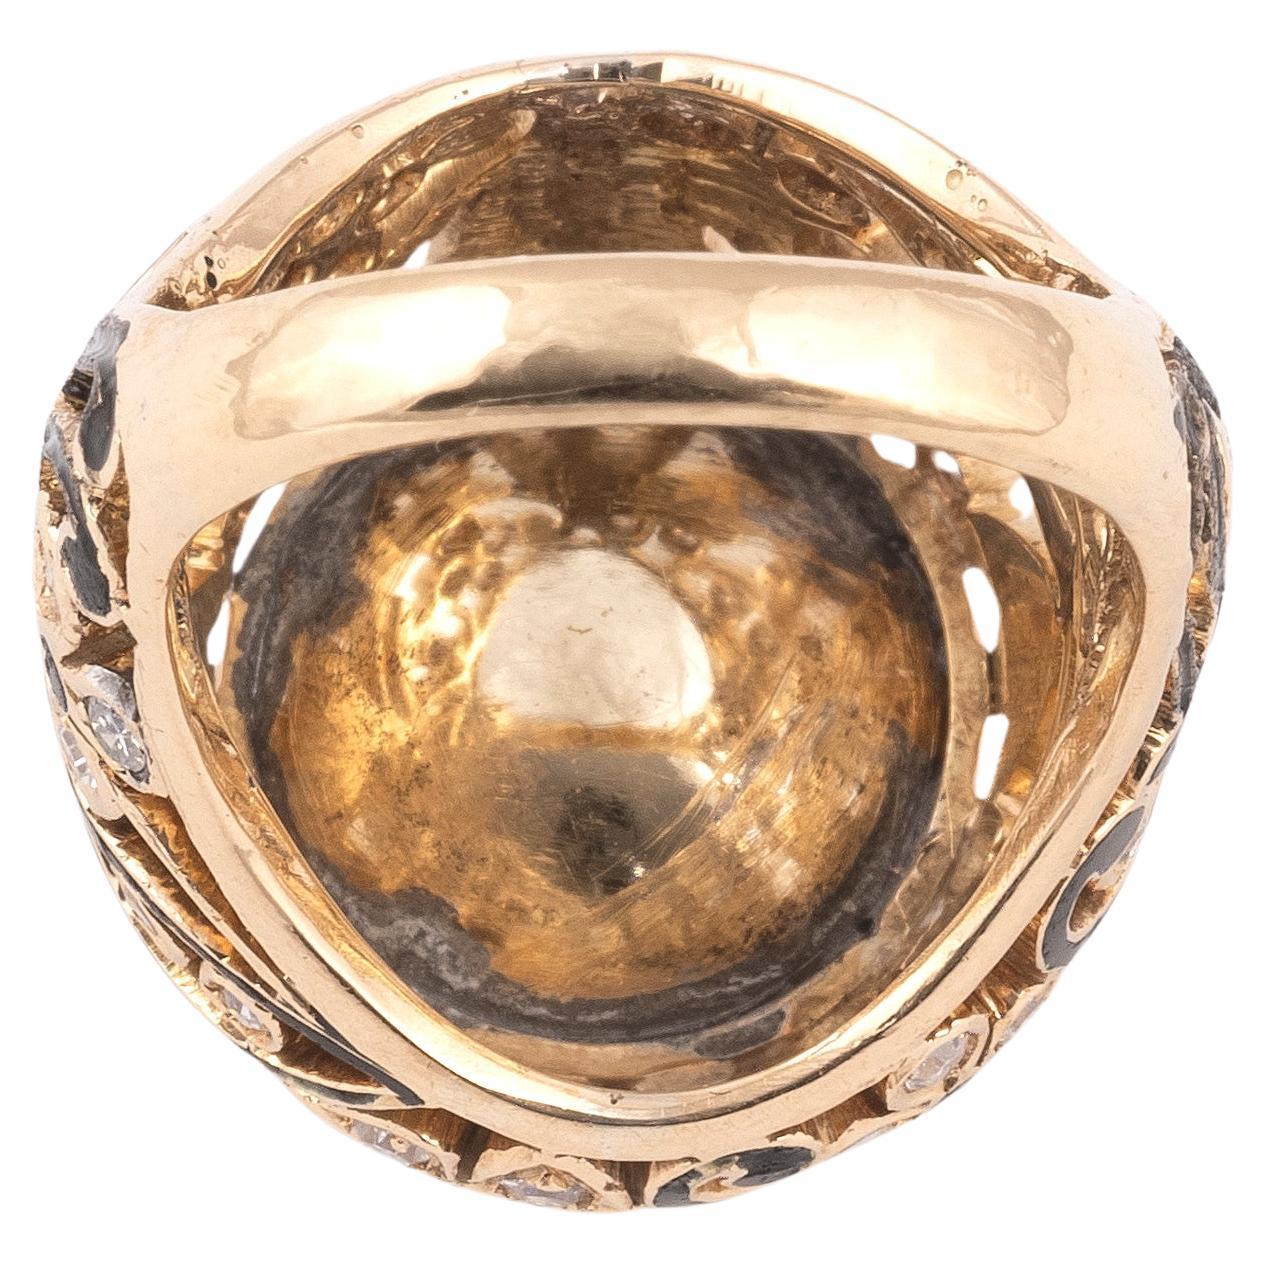 Arts-and-Crafts-Ring aus 18-karätigem Gold mit floralen Motiven aus schwarzer Emaille und einer Gruppe rosafarbener Diamanten, die die hohe Fassung umrahmen.
Italienisch um 1880
Bruttogewicht : 12,47 gr.
Größe : 6 1/4
Höhe am Finger: 1,3 cm. 
 